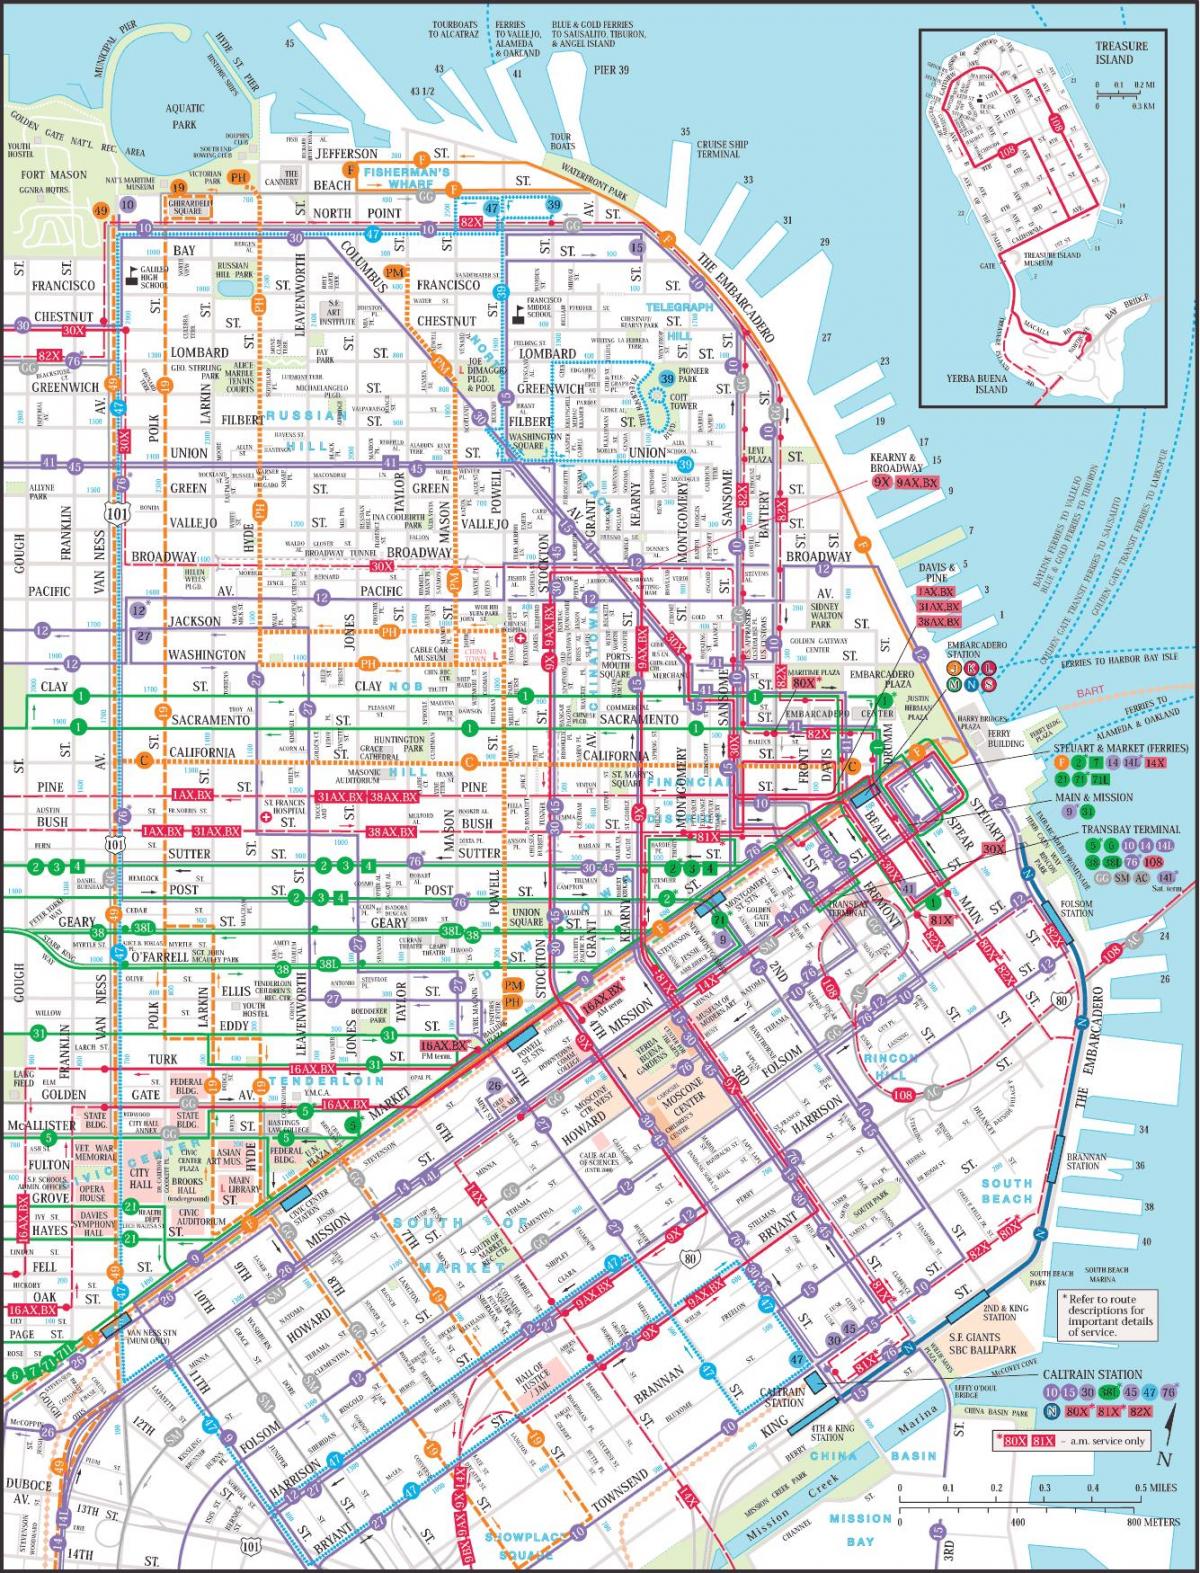 Сан Франциско обществен транспорт картата